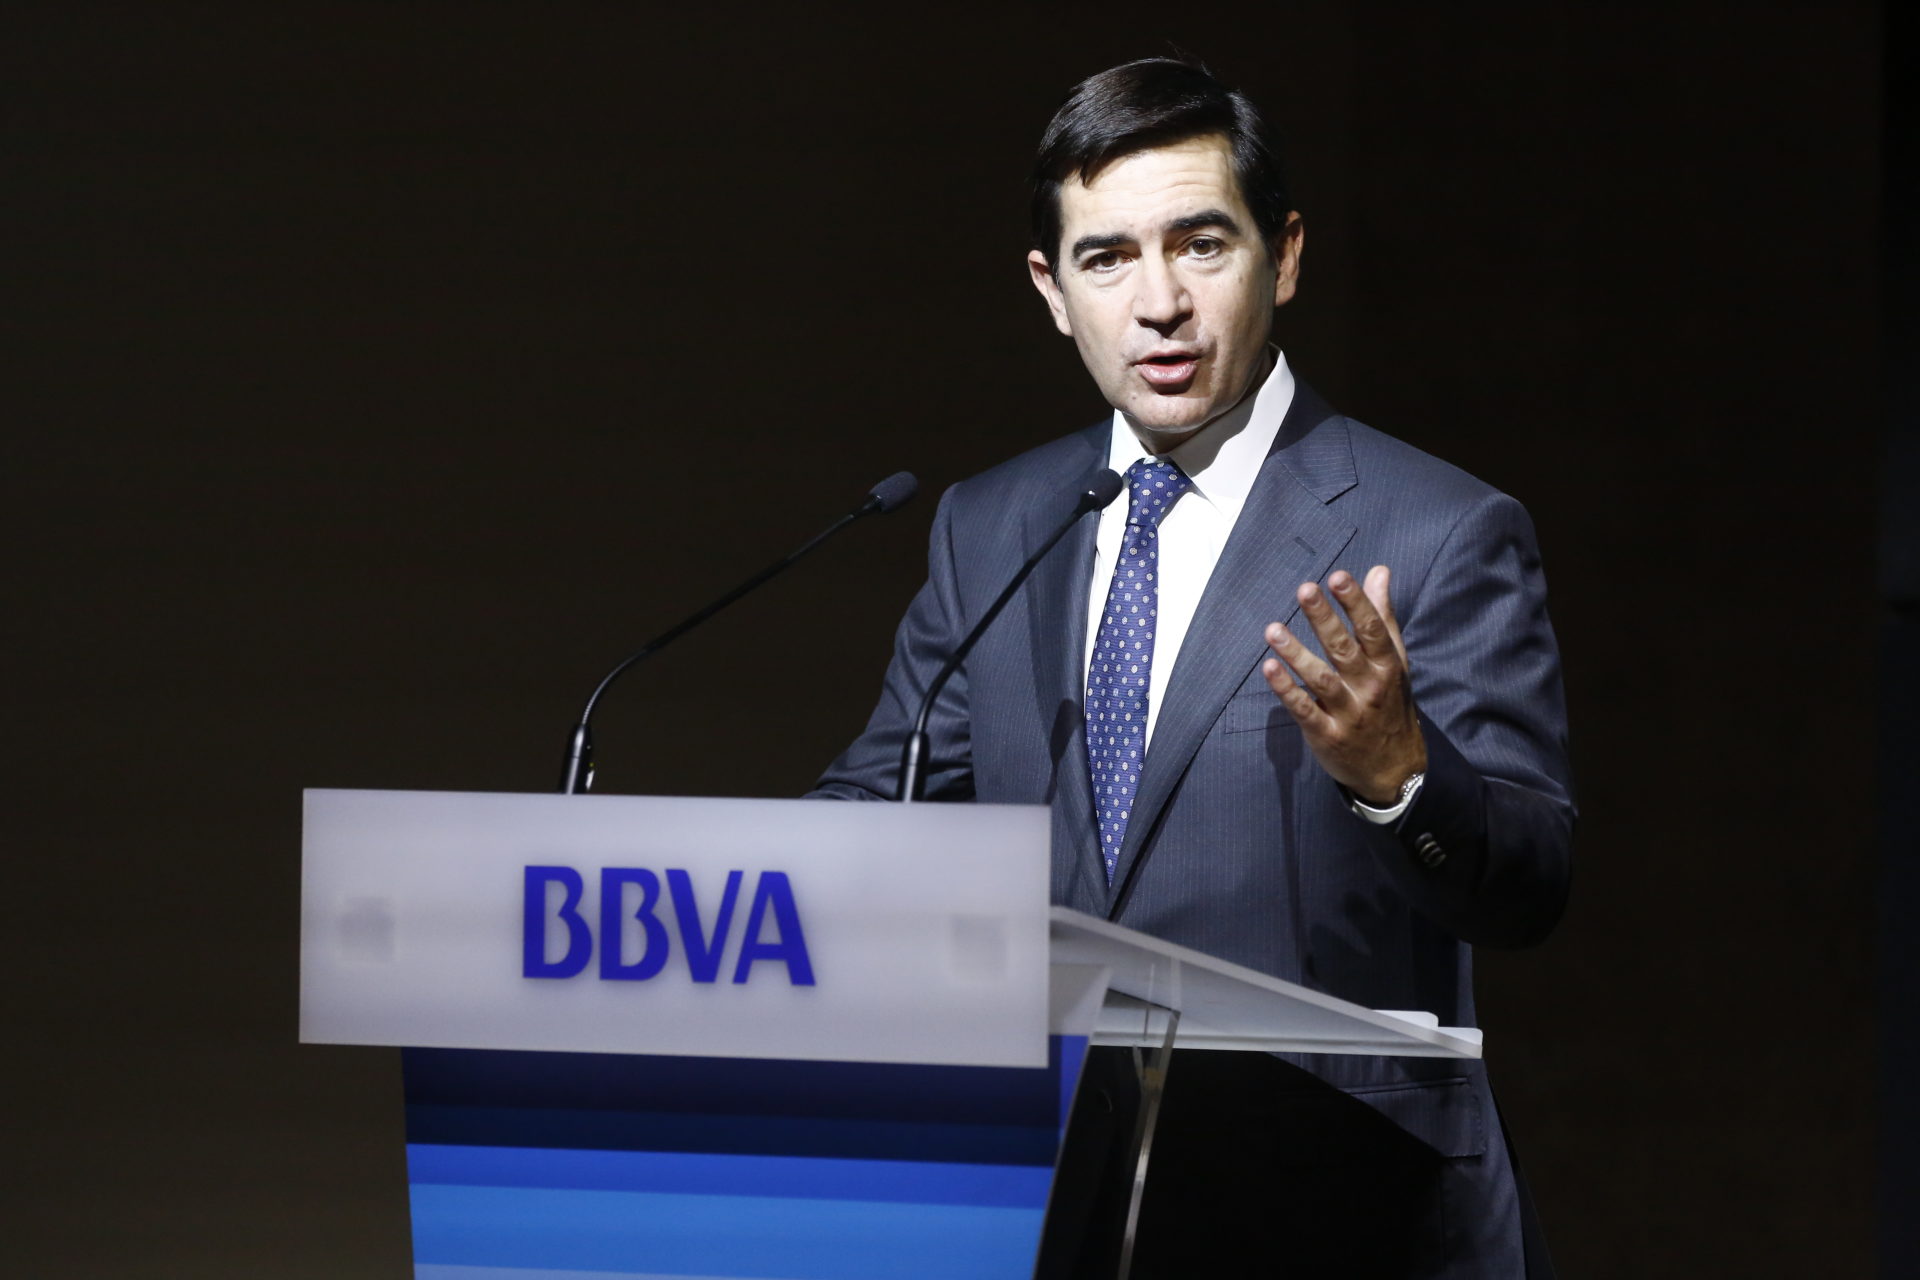 El consejero delegado de BBVA, Carlos Torres Vila, durante la presentación de resultados